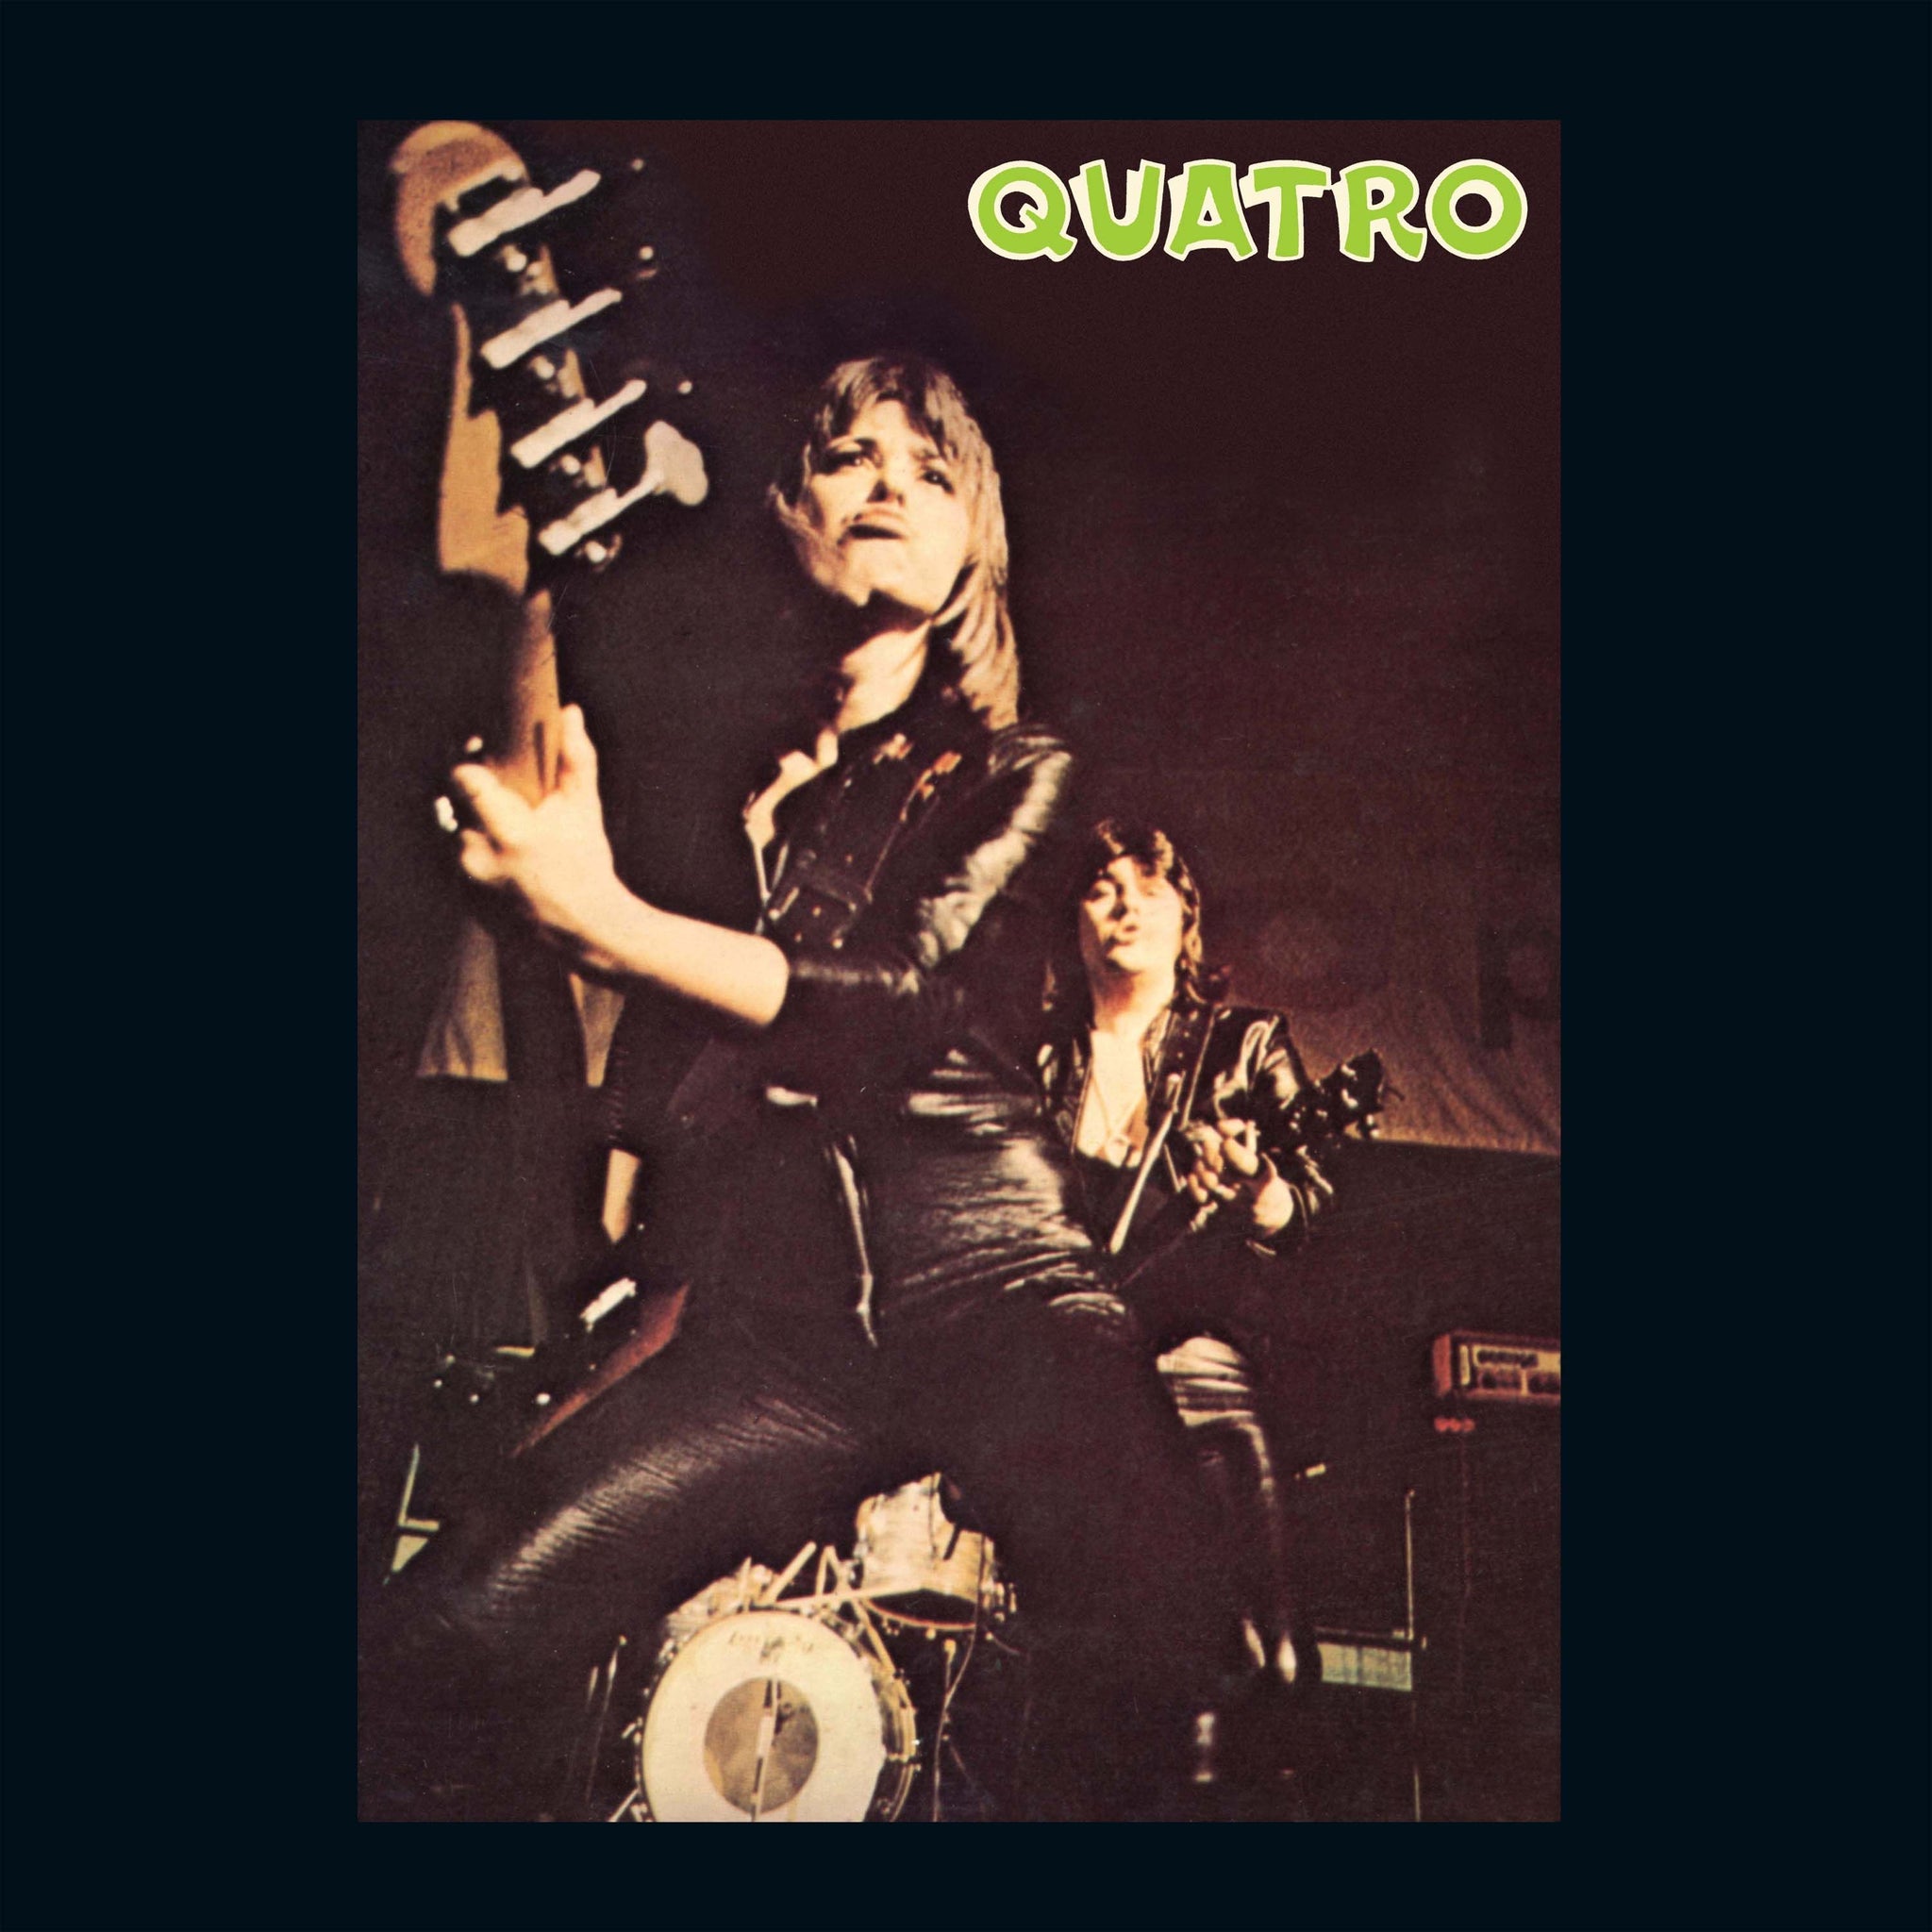 SUZI QUATRO - Quatro - 2LP - Vinyl [RSD23]